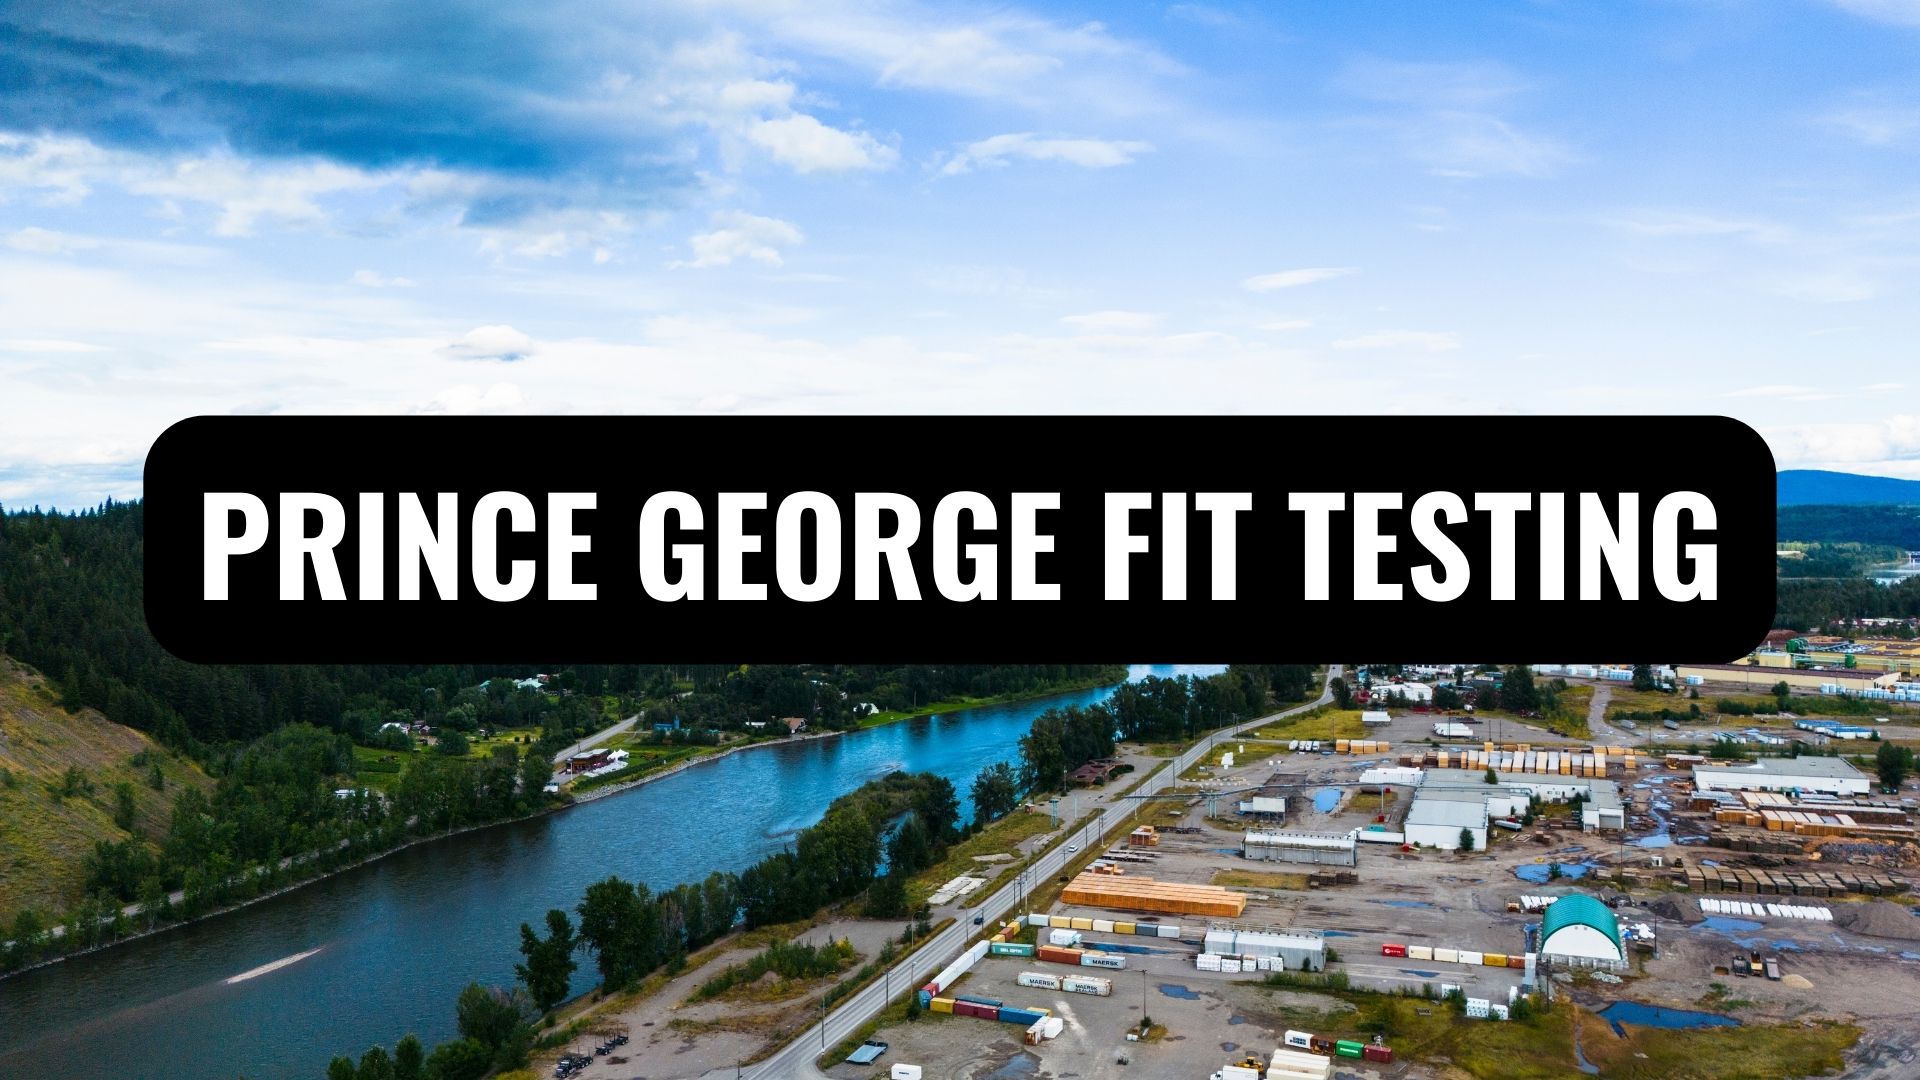 PRINCE GEORGE FIT TESTING